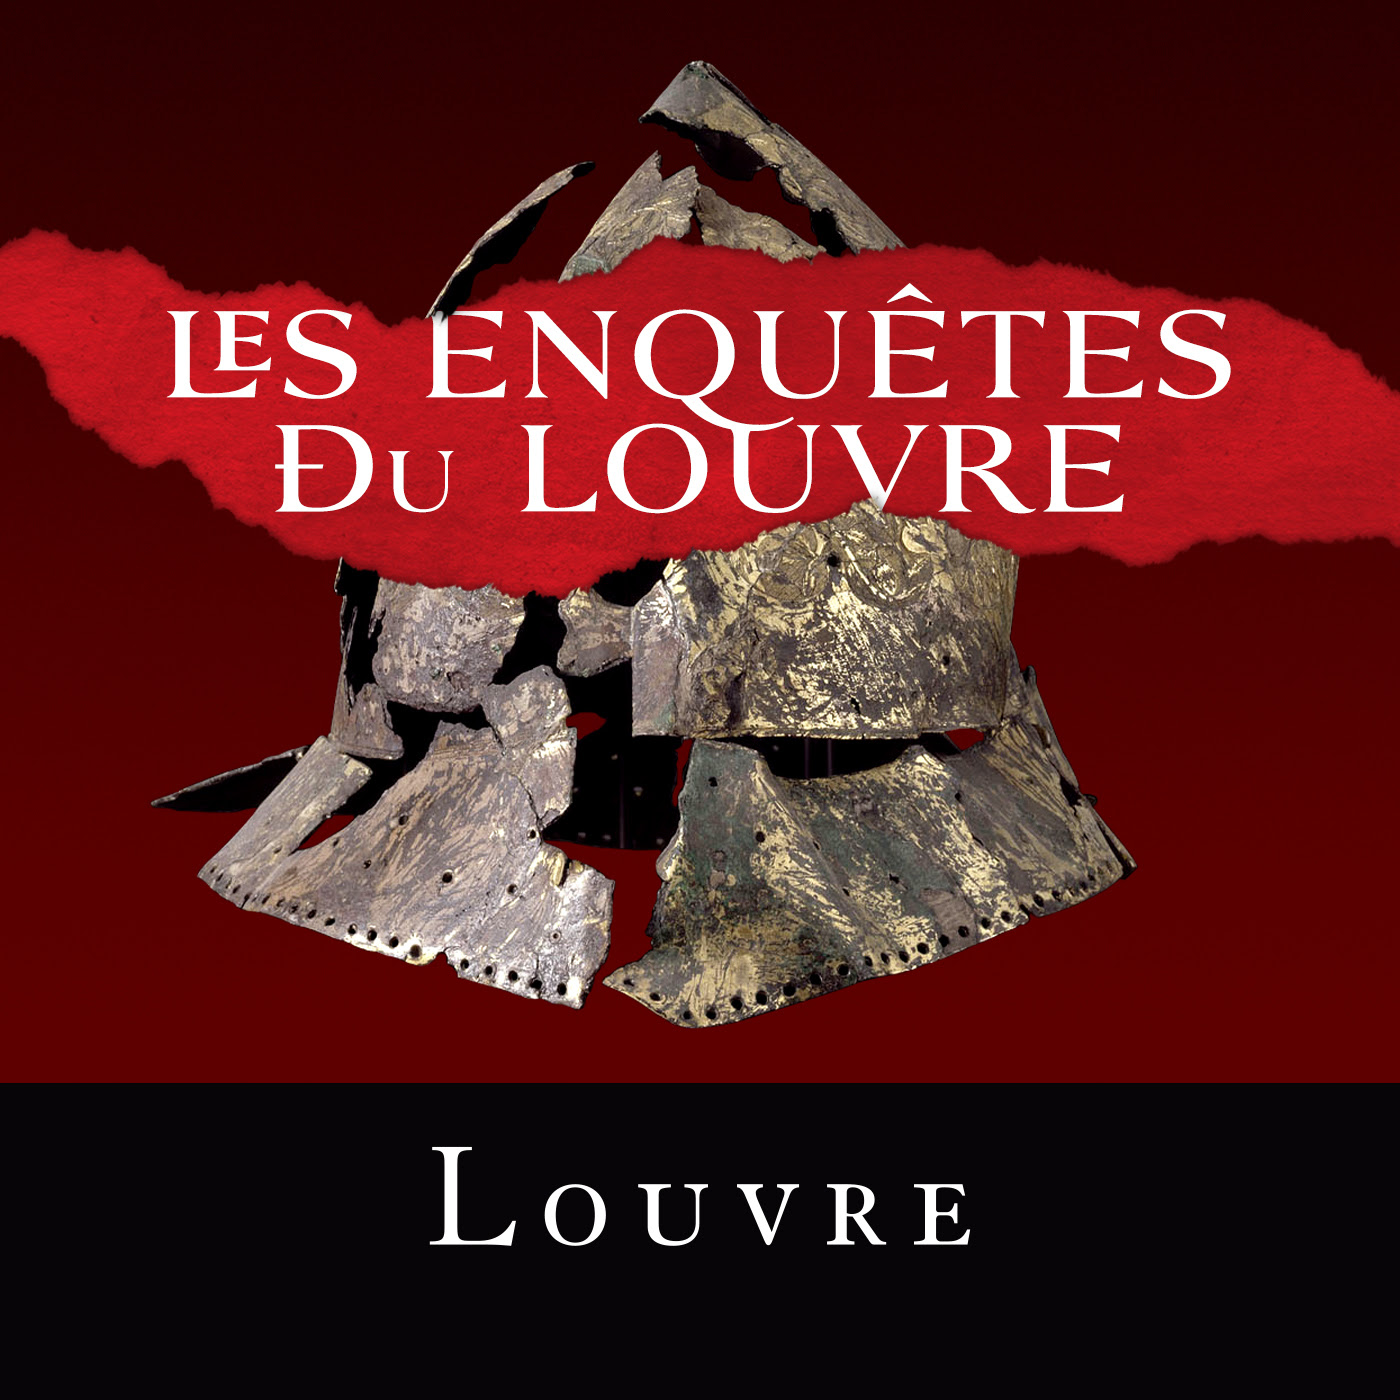 Espace presse du musée du Louvre